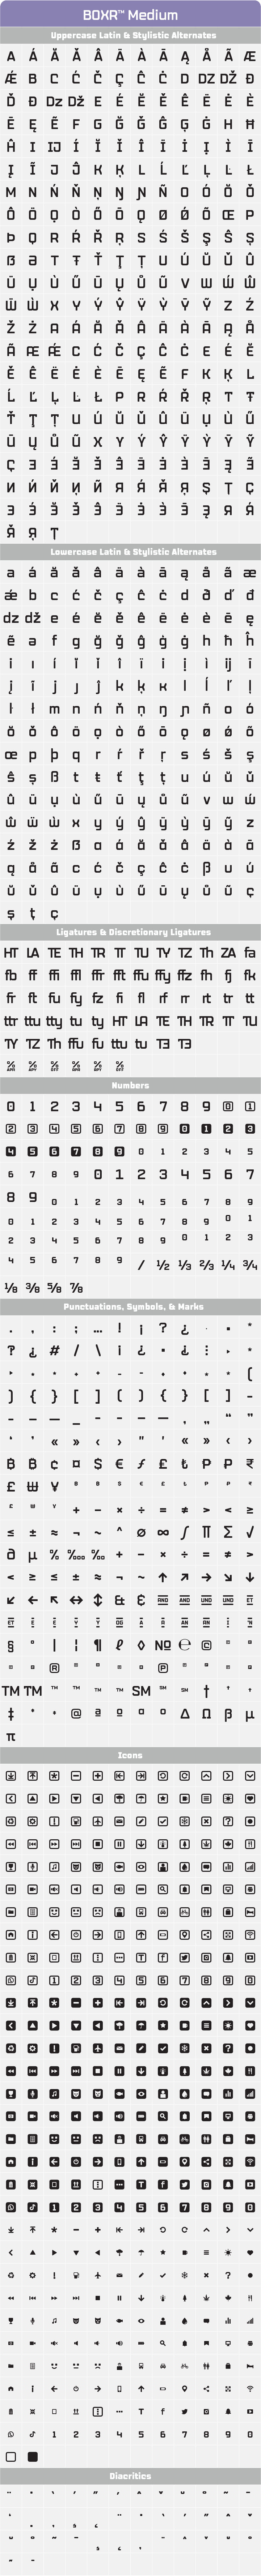 Boxr-Fonts-Medium-Glyph-Tables.png